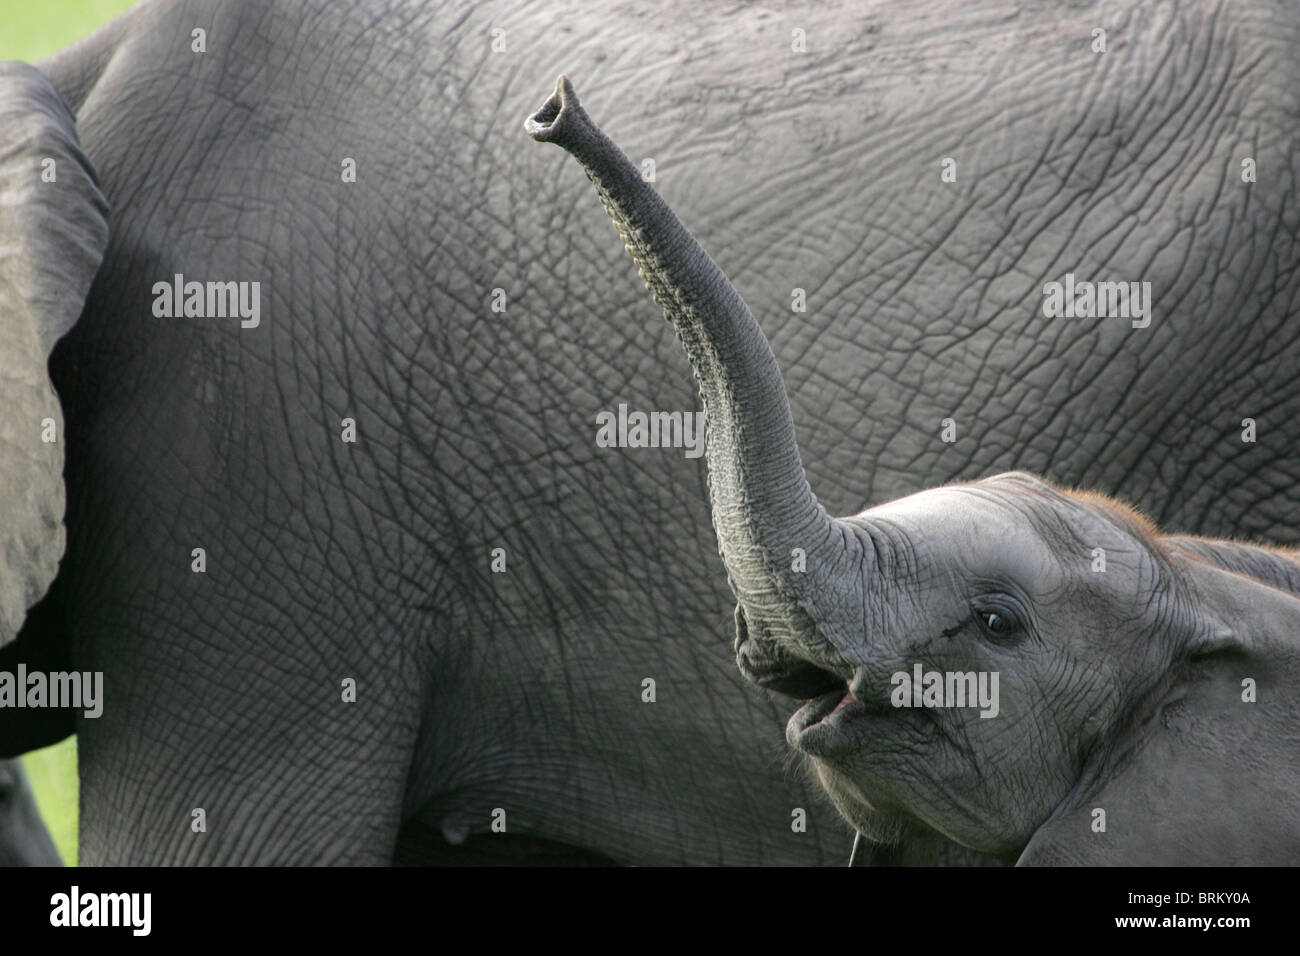 Ritratto di un baby elephant con il suo tronco sollevato viste contro il fianco di un adulto in background Foto Stock